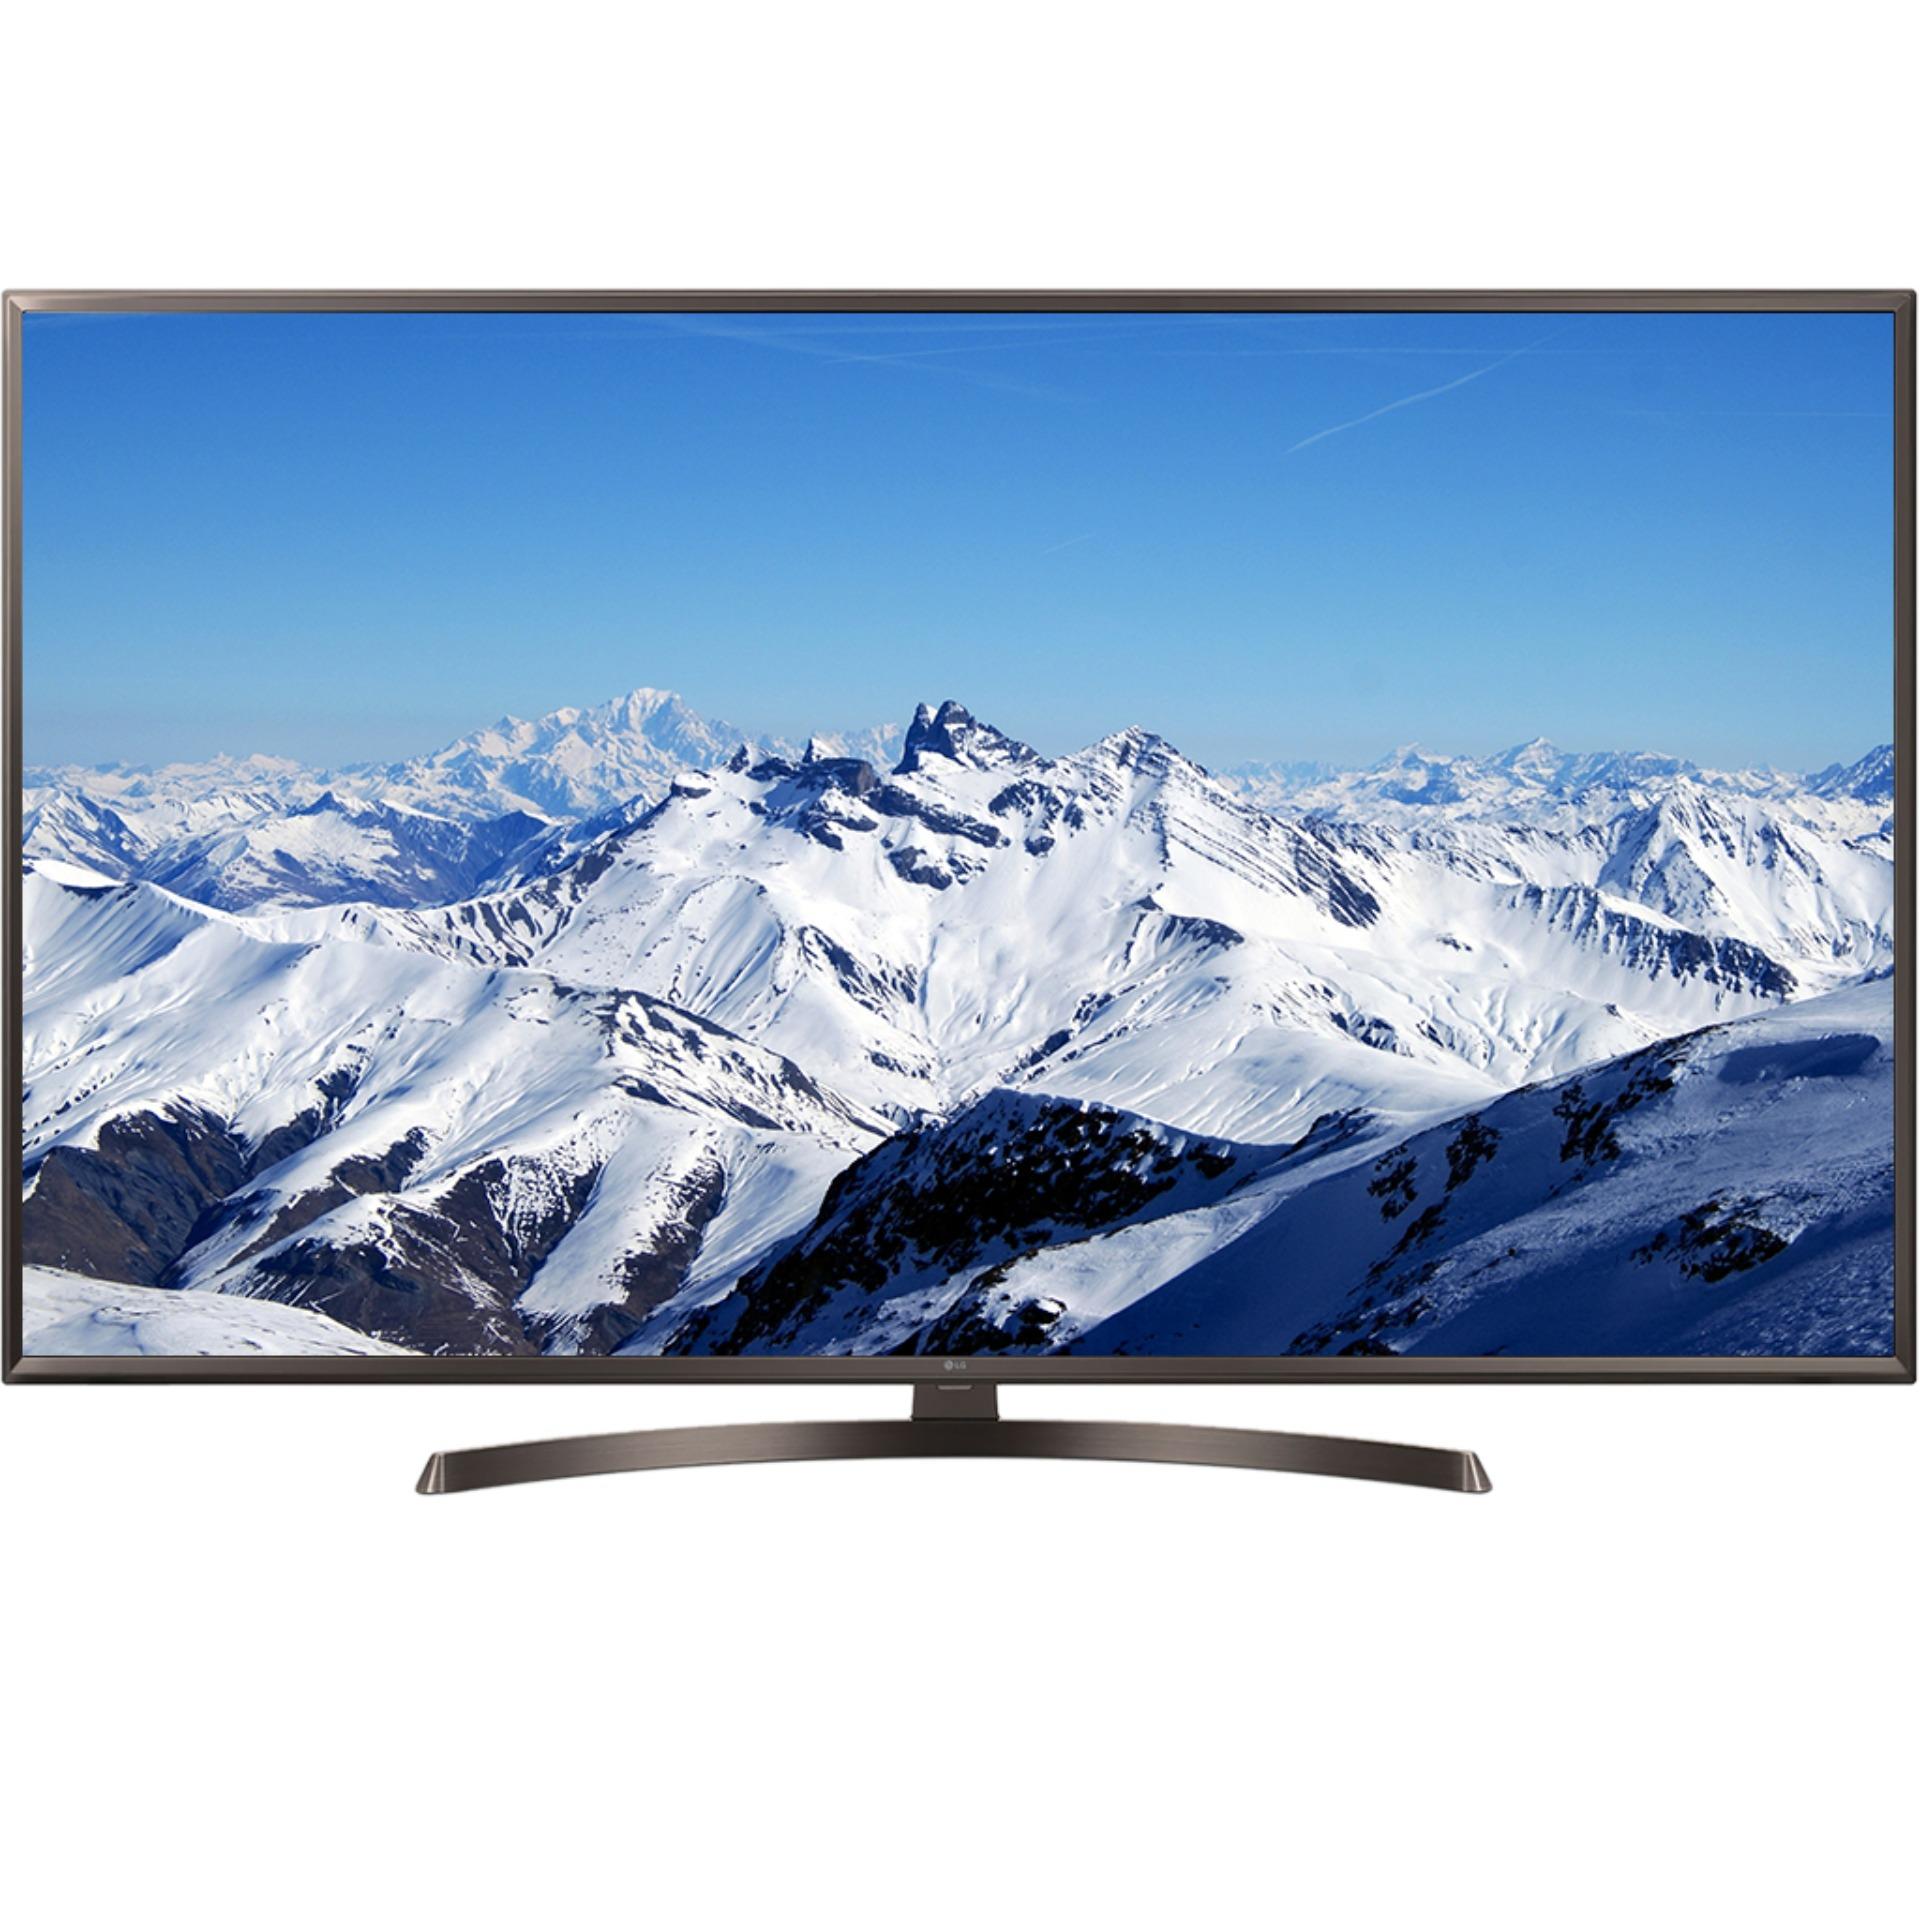 Smart TV LG 49inch 4K Ultra HD - Model 49UK6340PTF (Đen) - Hãng phân phối chính thức